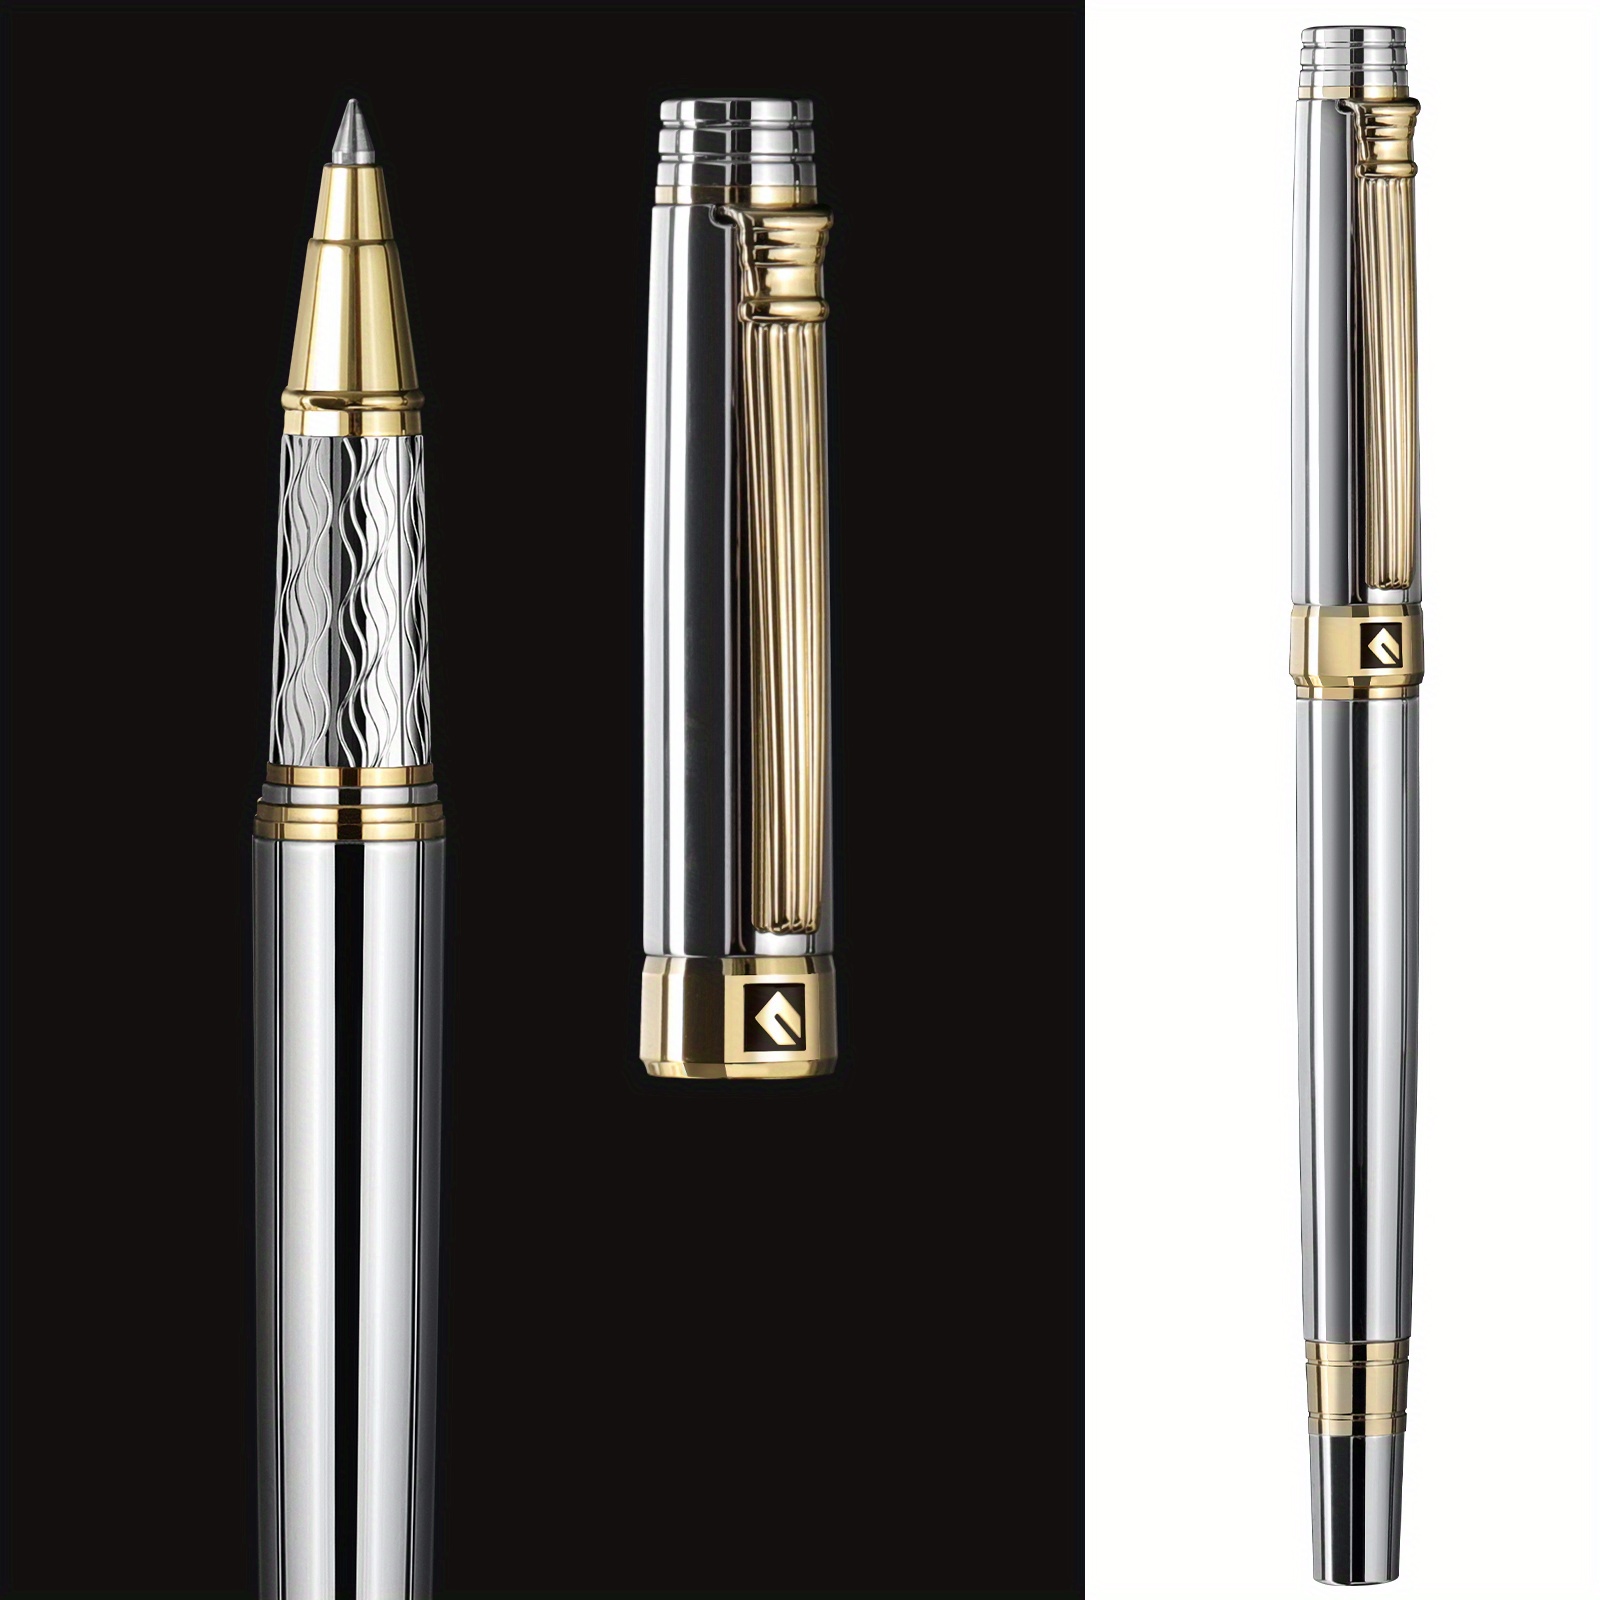 Zalantan Liquid Ink Rollerball Pen,Luxury pen,Nice pen Metal pen